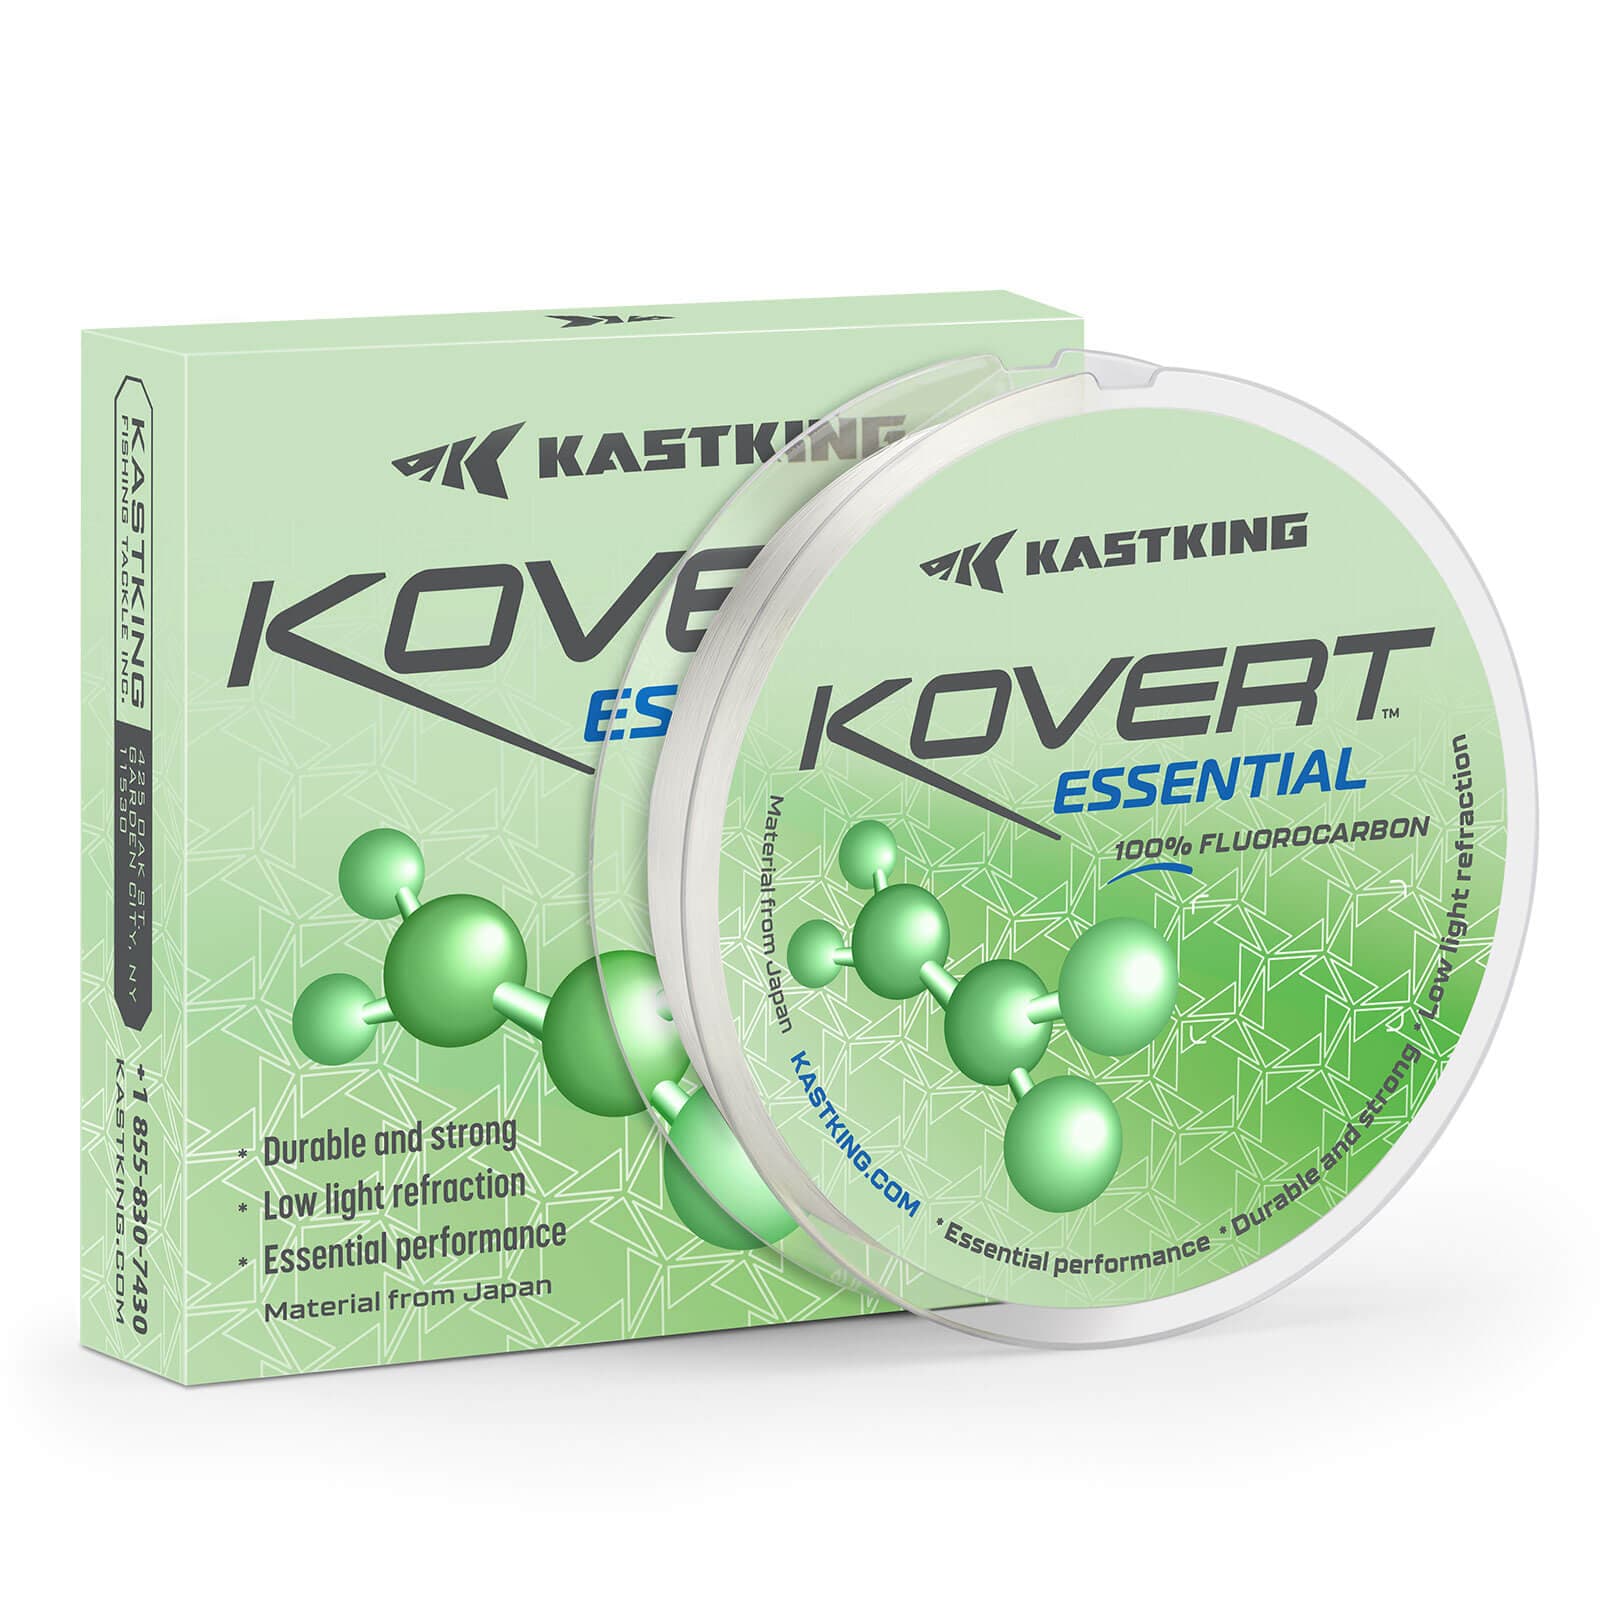 Kastking Kovert Essential 100% Fluorocarbon Fishing Line - 25 Yds / 6 LB